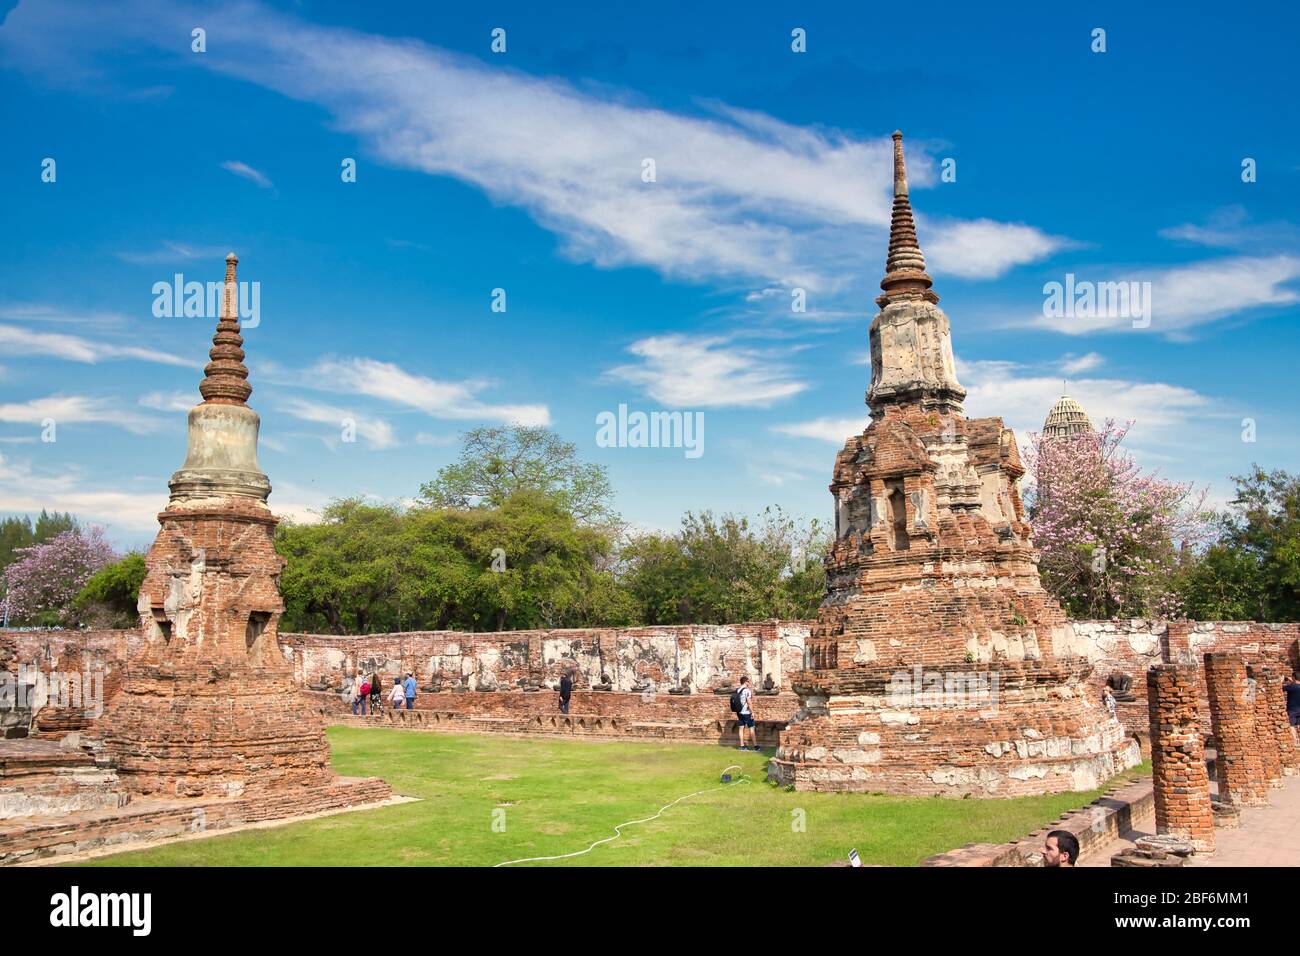 Pagode am Wat Chaiwatthanaram Tempel, einer der berühmten Tempel in Ayutthaya Provinz Thailand. UNESCO-Welterbe. Tempel in Ayutthaya Historical P Stockfoto